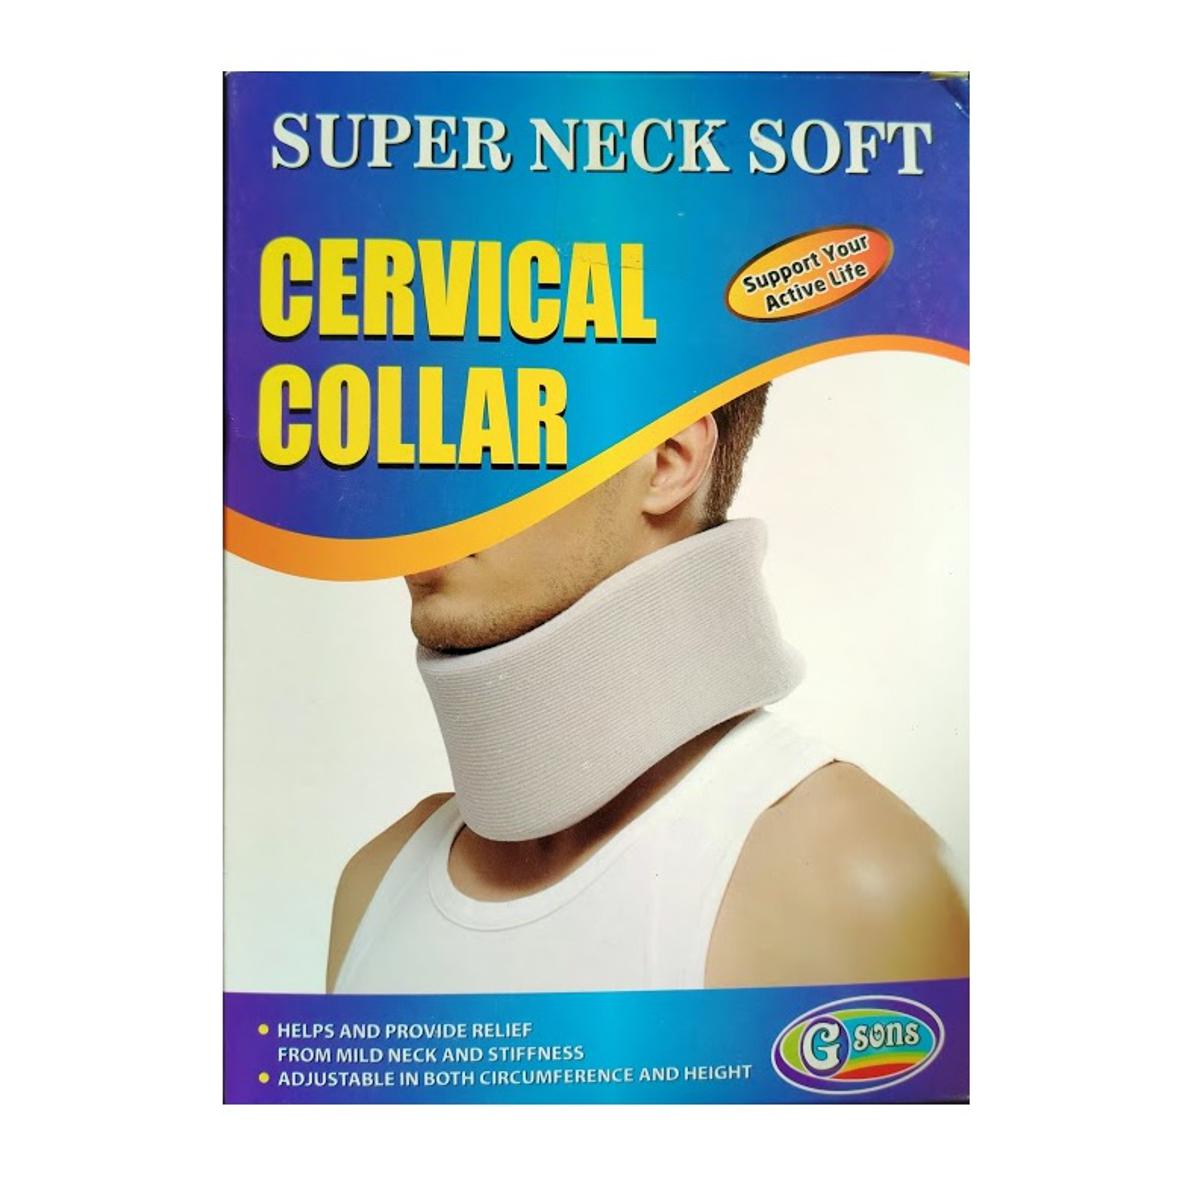  Wonder Care Soft Cervical Collar Adjustable Collar